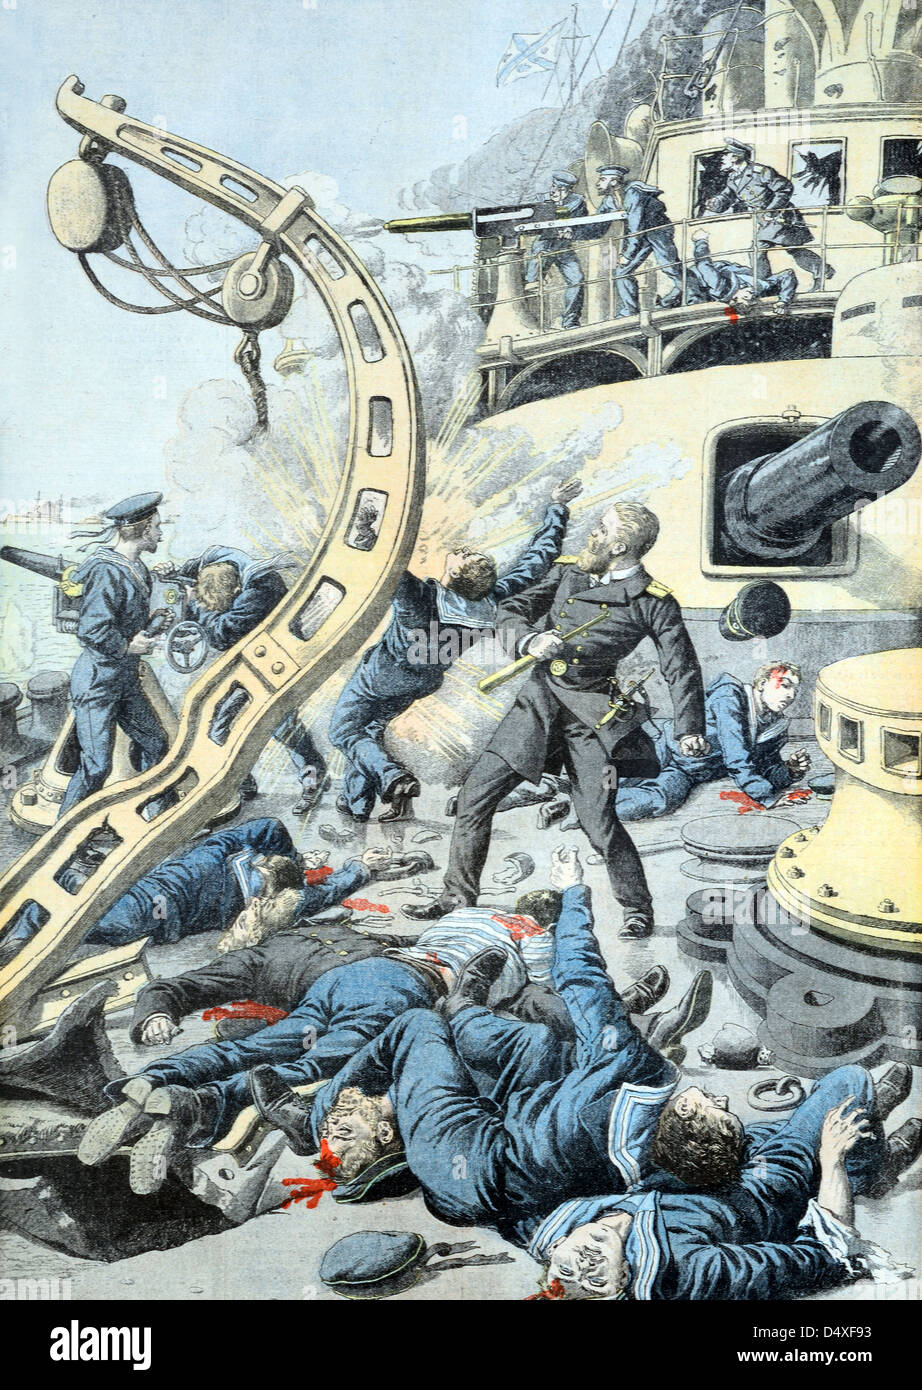 Vintage ou ancienne illustration de la Bataille navale ou de la Bataille maritime pour Port Arthur Manchuria pendant la guerre russo-japonaise (sept 1904) Banque D'Images